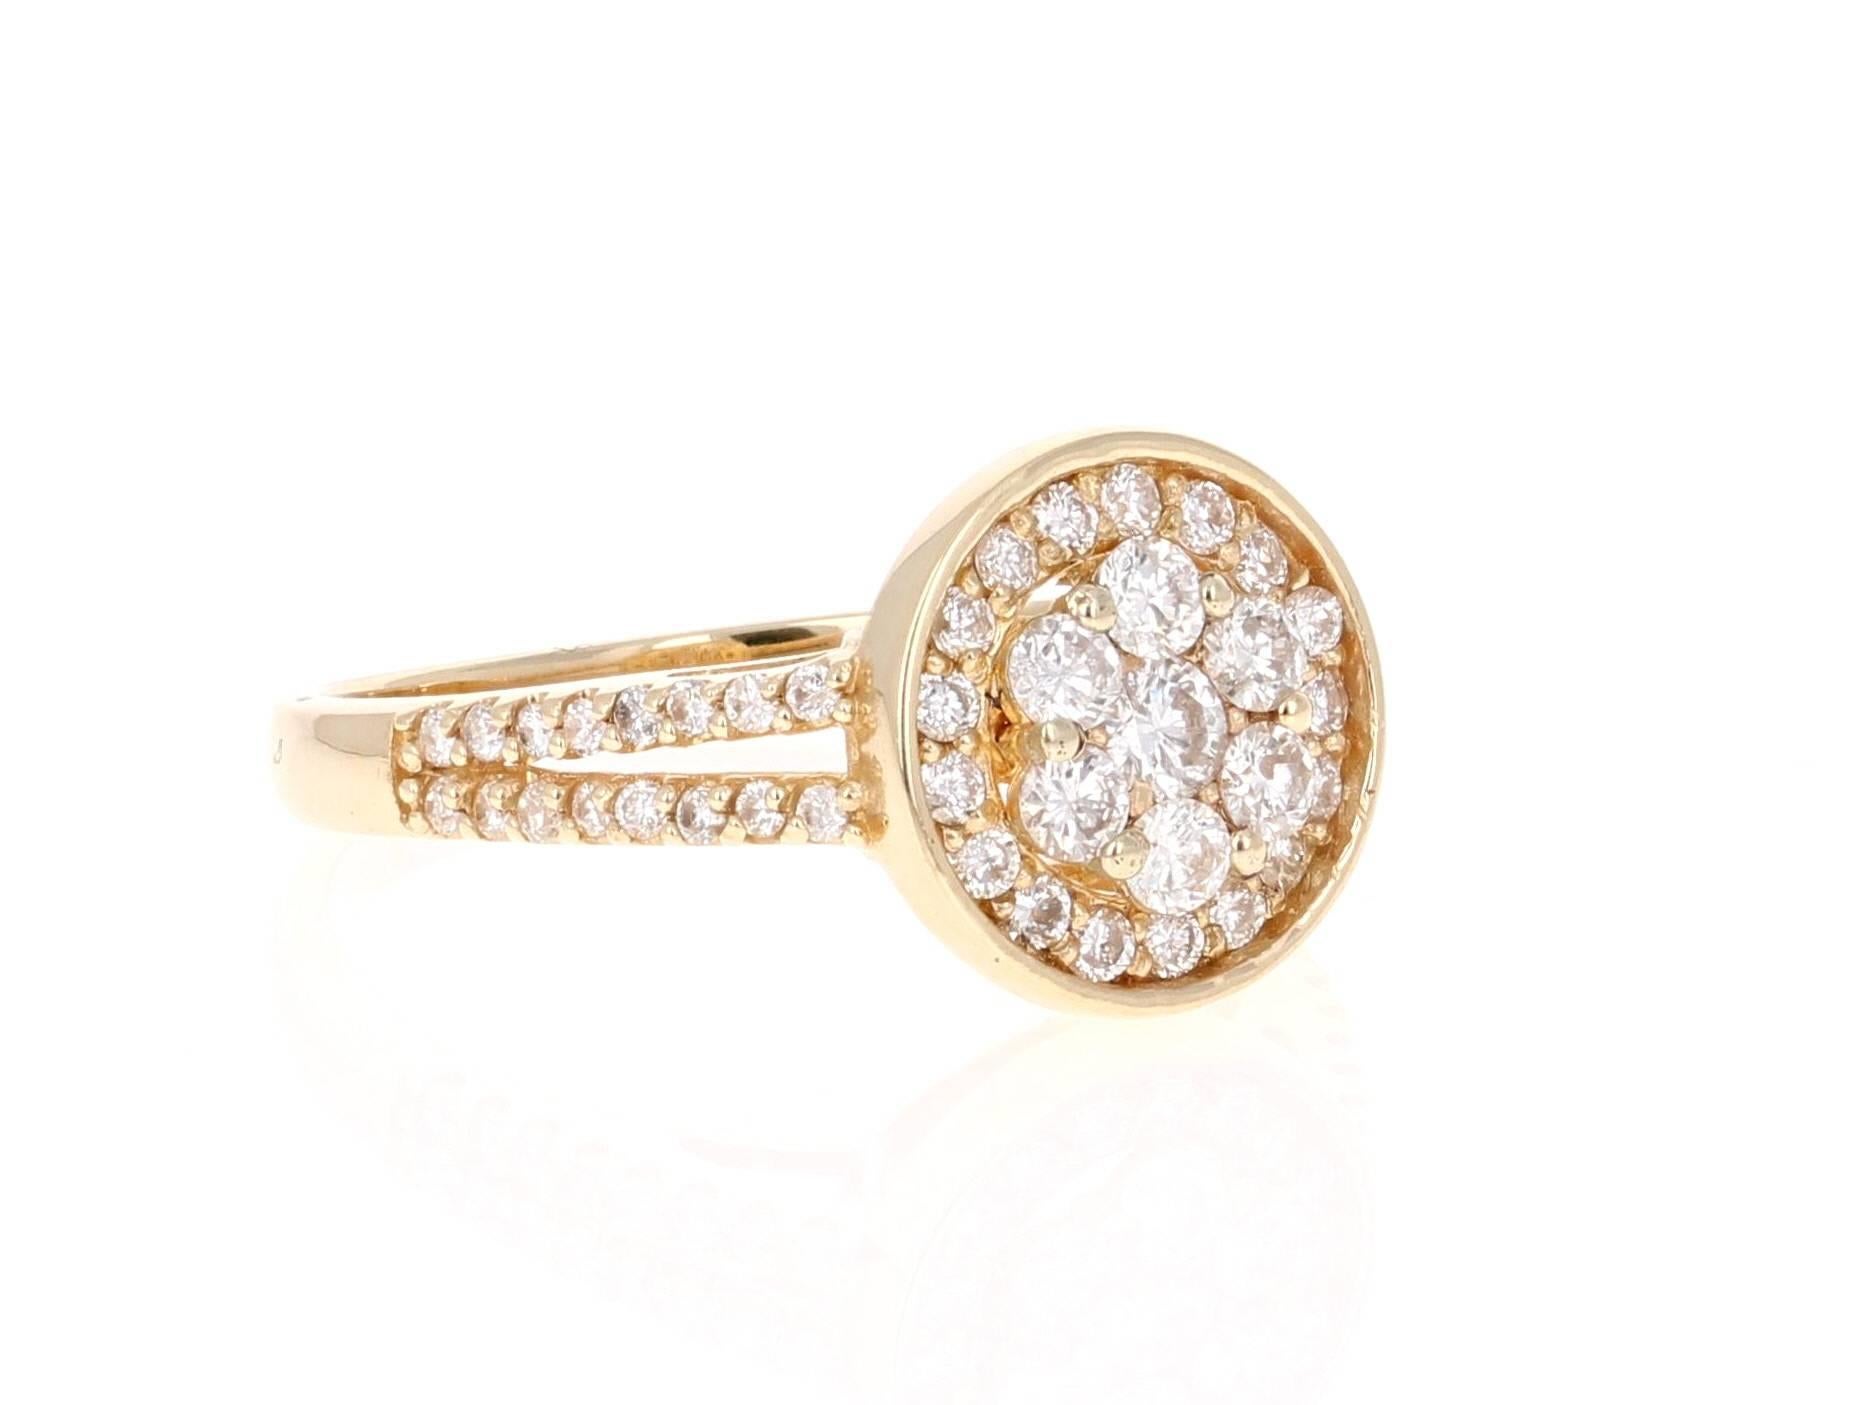 Diamant-Gelbgold-Cluster-Ring

Ein niedlicher und zierlicher Cocktailring, der mit Sicherheit eine großartige Ergänzung Ihrer Schmucksammlung darstellt.
Er hat 56 Diamanten im Rundschliff mit einem Gesamtgewicht von 0,68 Karat. 
Es ist wunderschön